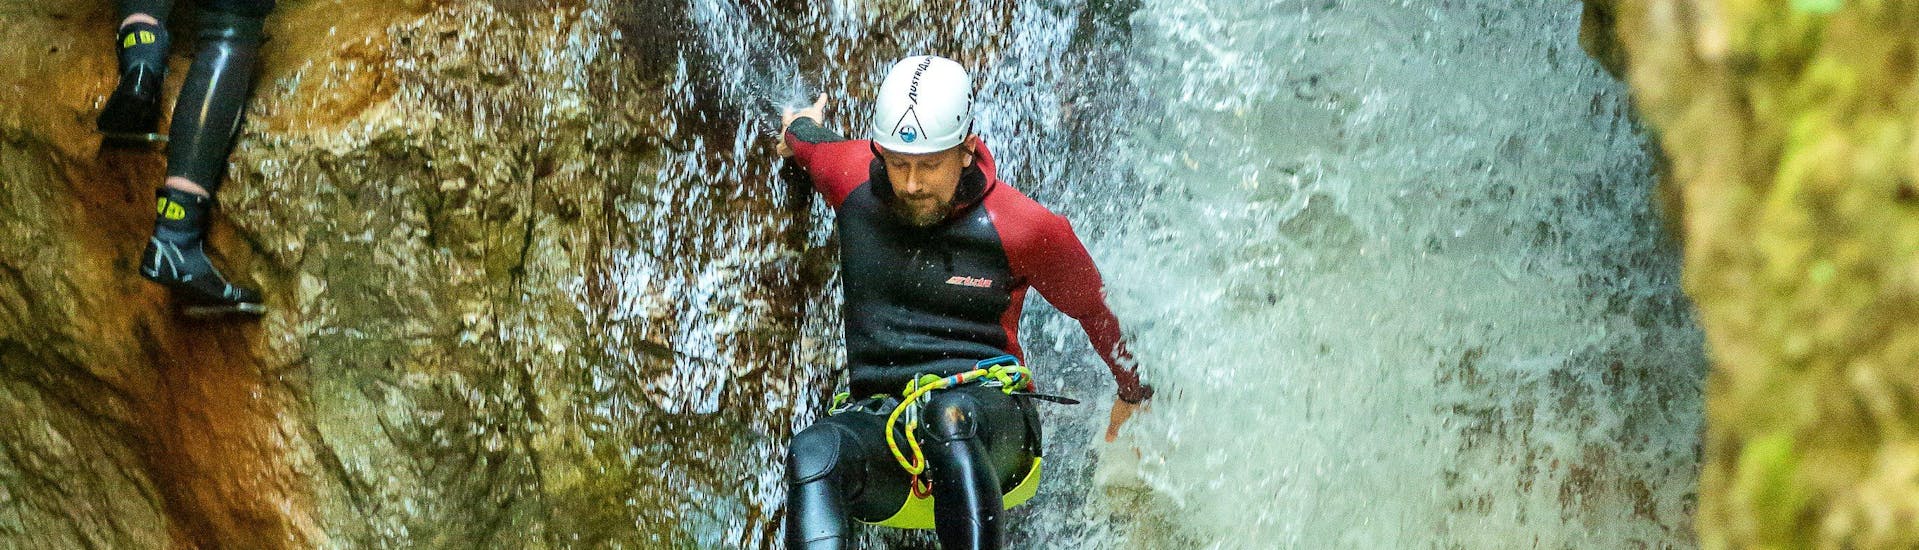 Ein Teilnehmer des Canyoning für Entdecker in der Taxaklamm mit Adventure Club Kaiserwinkl rutscht über einen Wasserfall in der Schlucht.